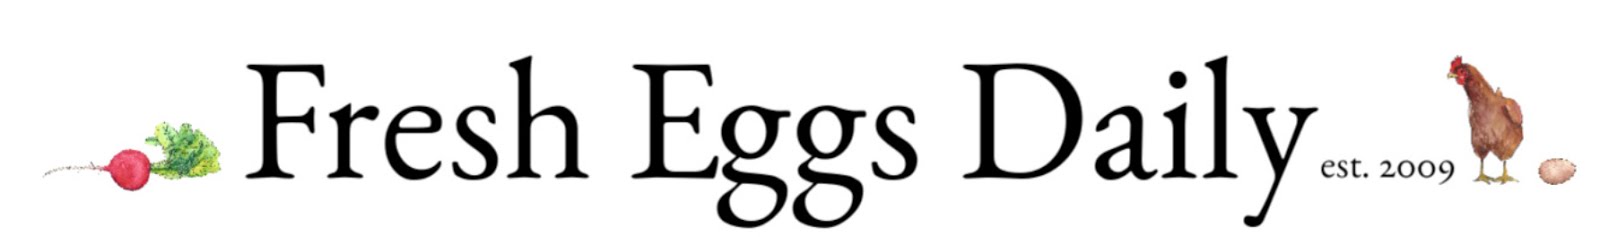 Fresh Eggs Daily®